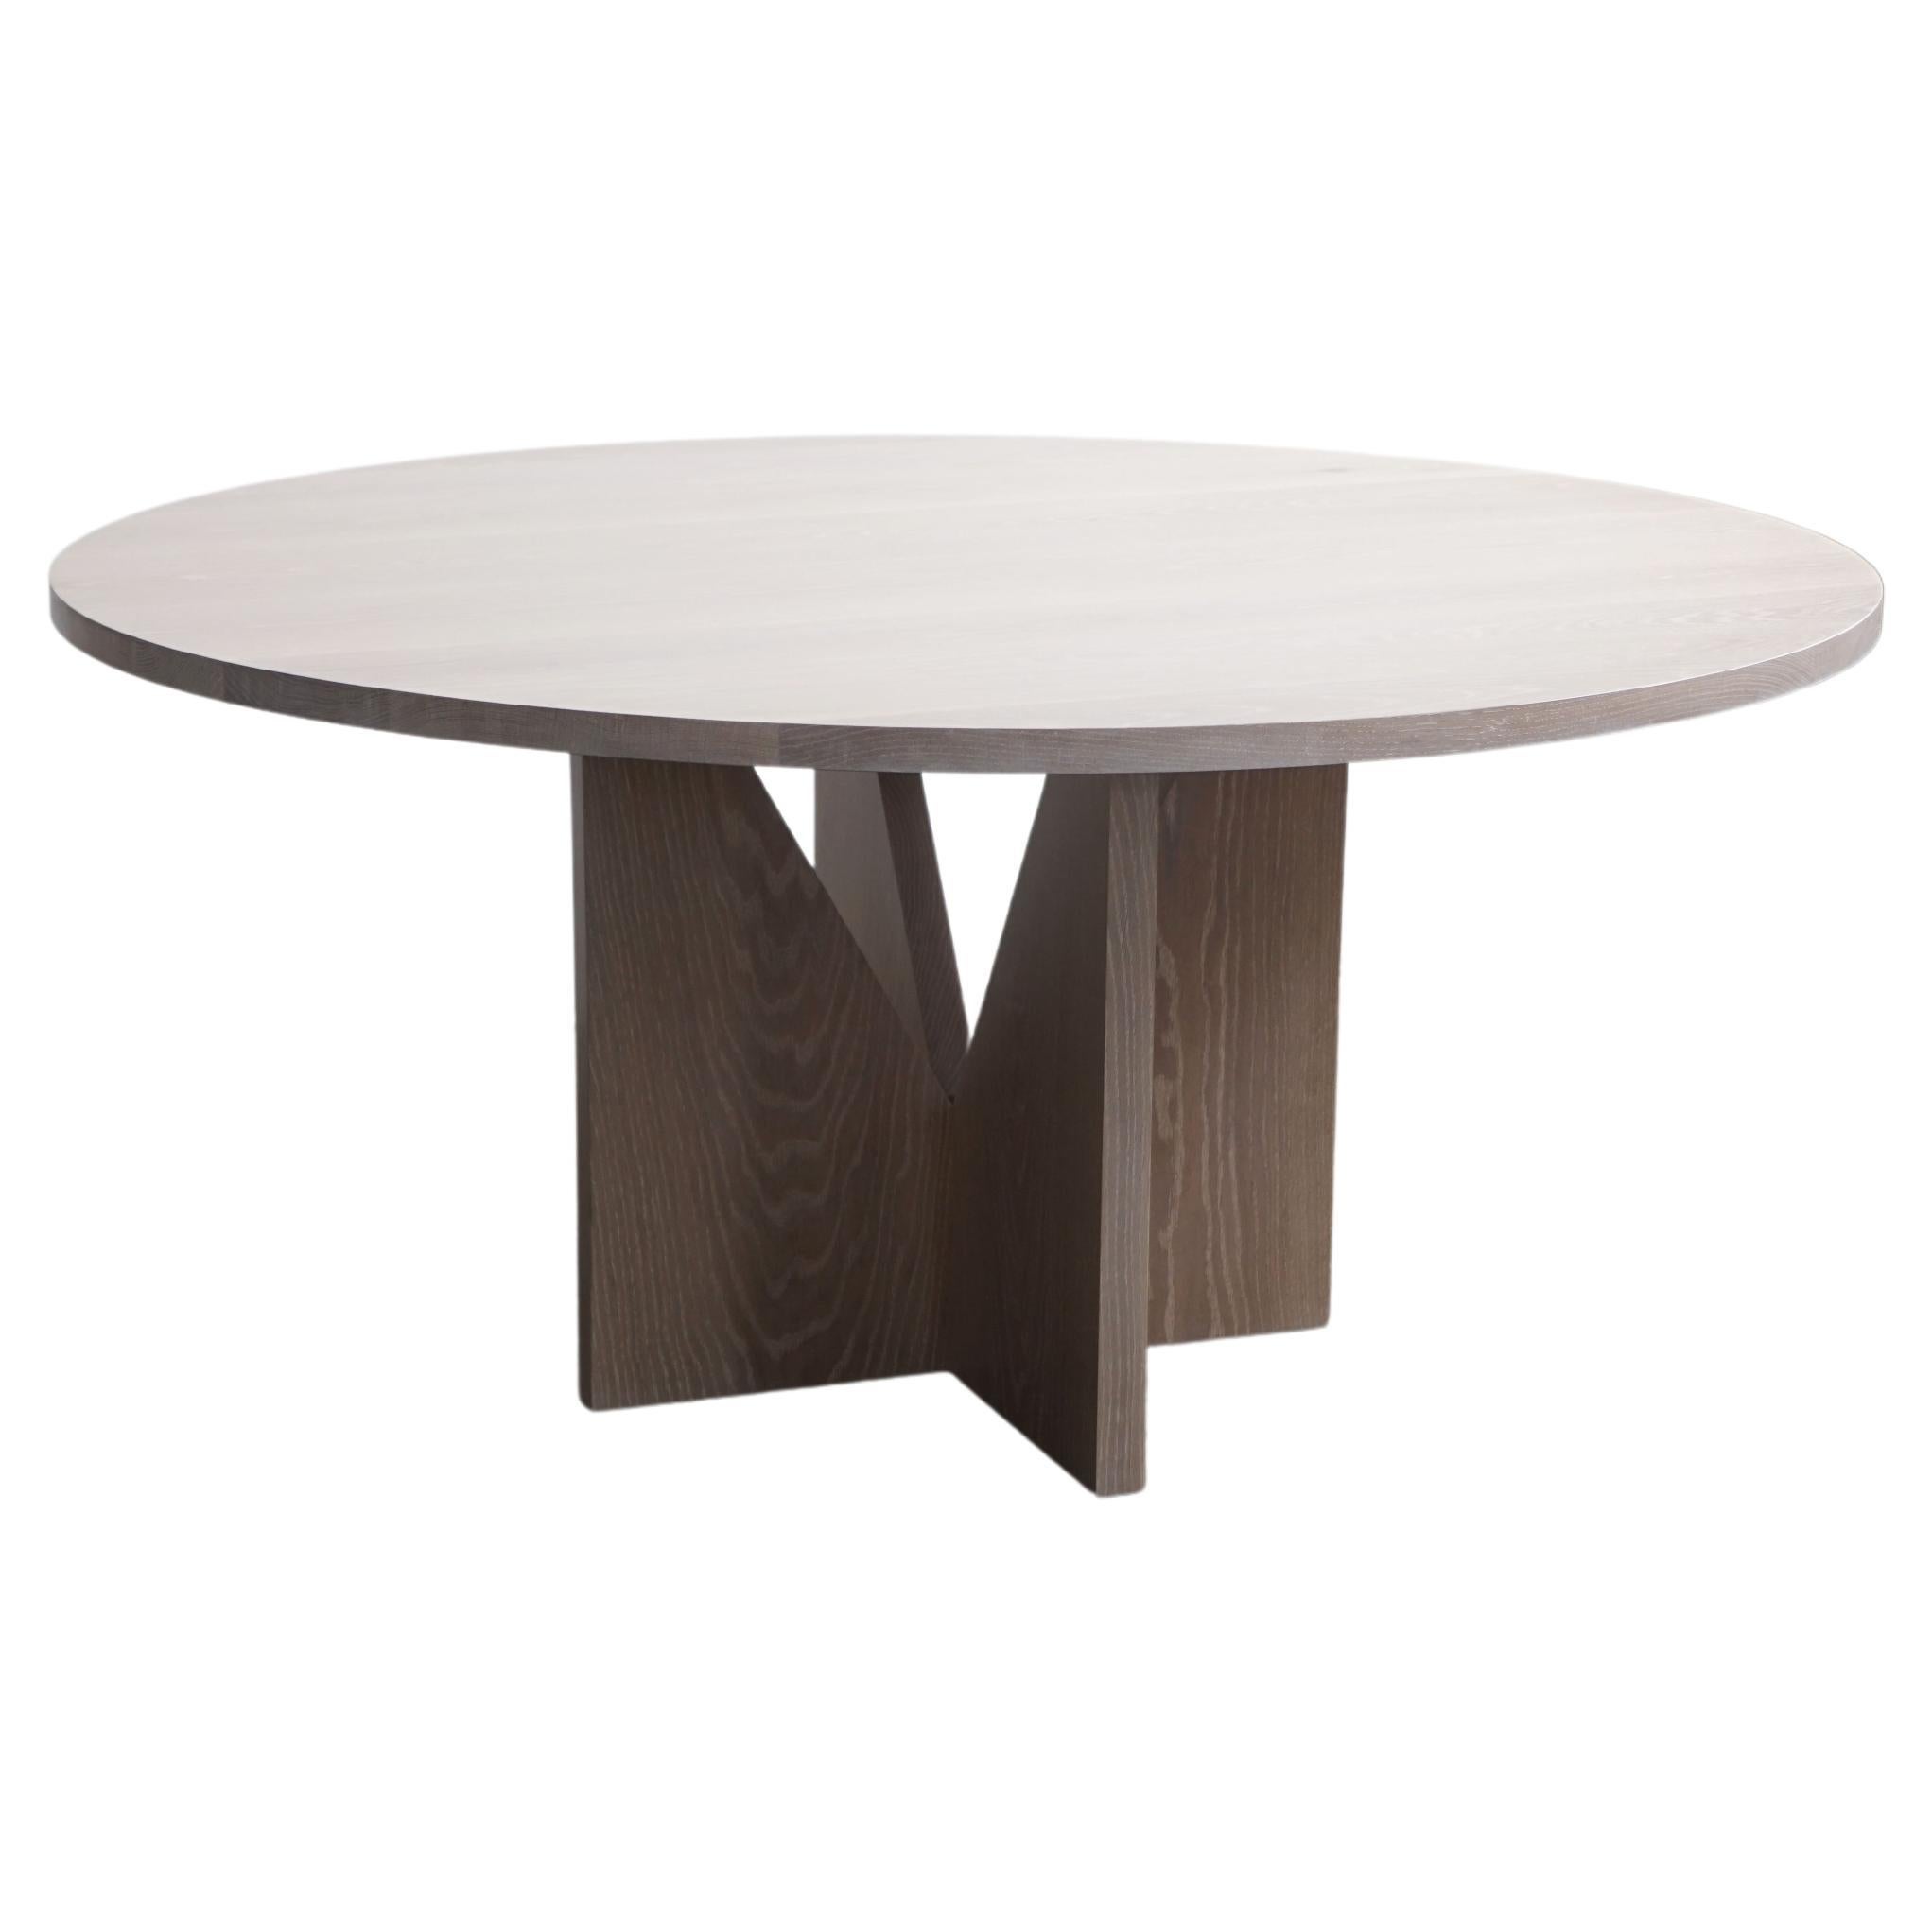 Table de salle à manger ronde contemporaine en bois de chêne blanc par Last Workshop, minimaliste